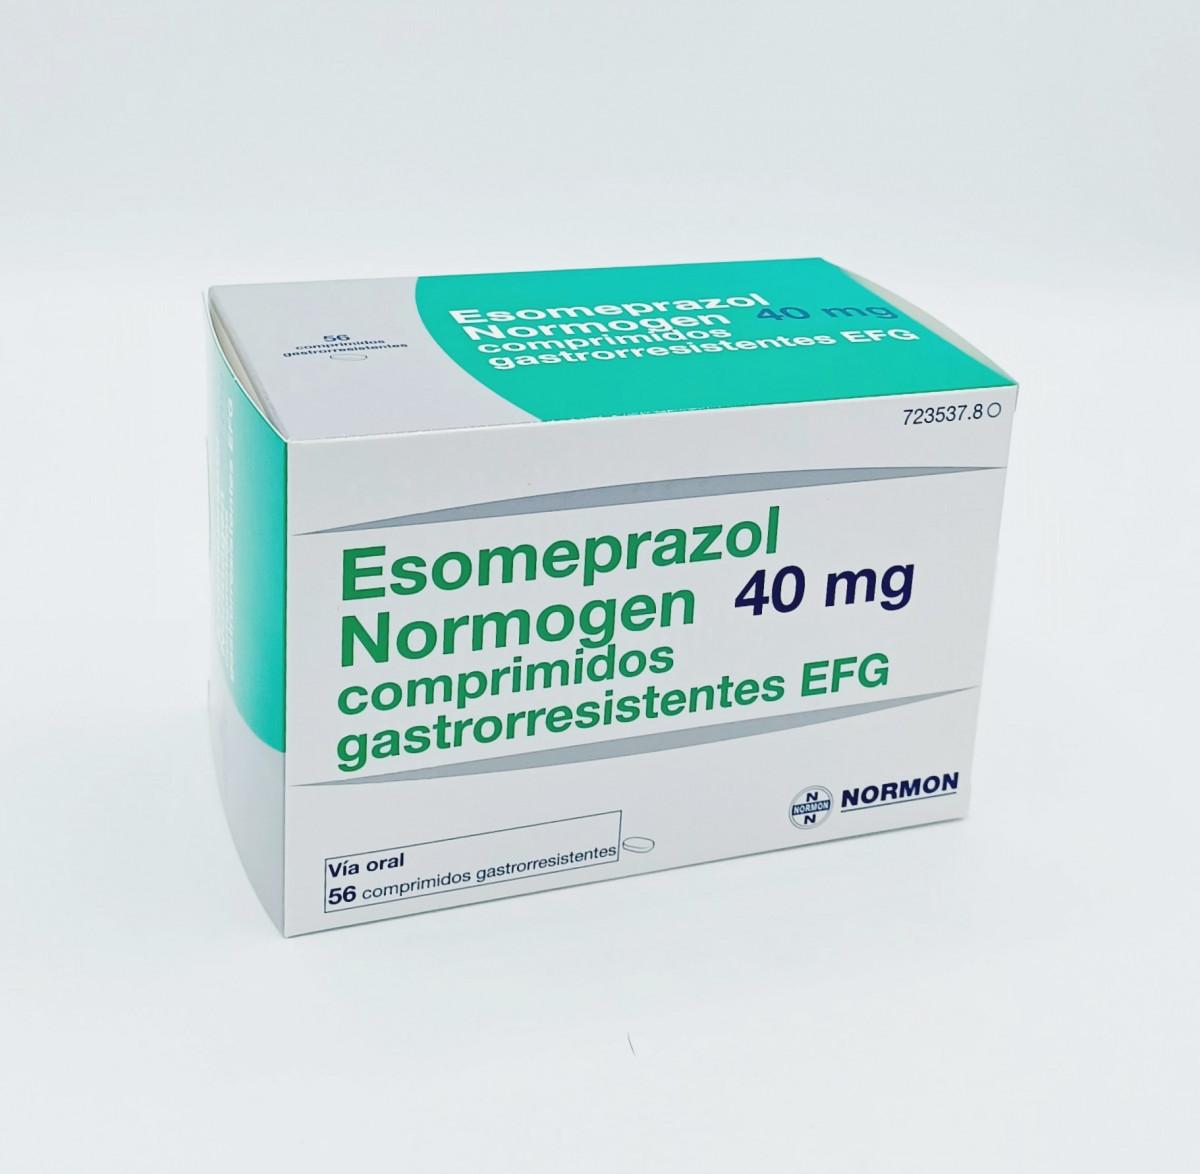 ESOMEPRAZOL NORMOGEN 40 MG COMPRIMIDOS GASTRORRESISTENTES EFG 14 comprimidos (Blister PVC/PVDC-Al) fotografía del envase.